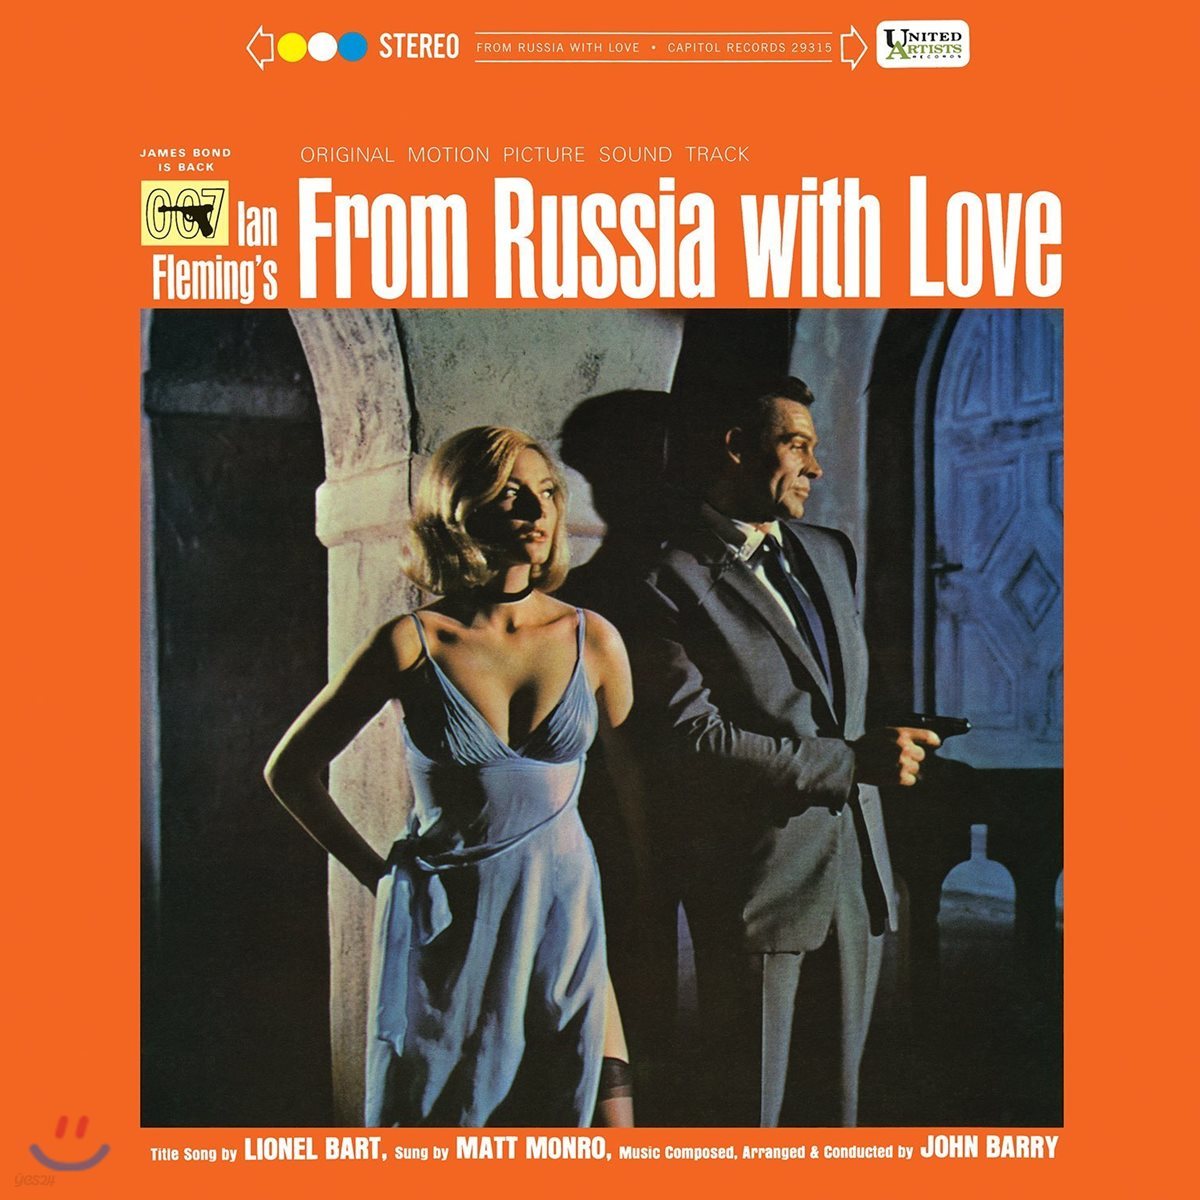 007 위기일발 영화음악 (From Russia With Love OST by John Barry 존 배리) [LP]